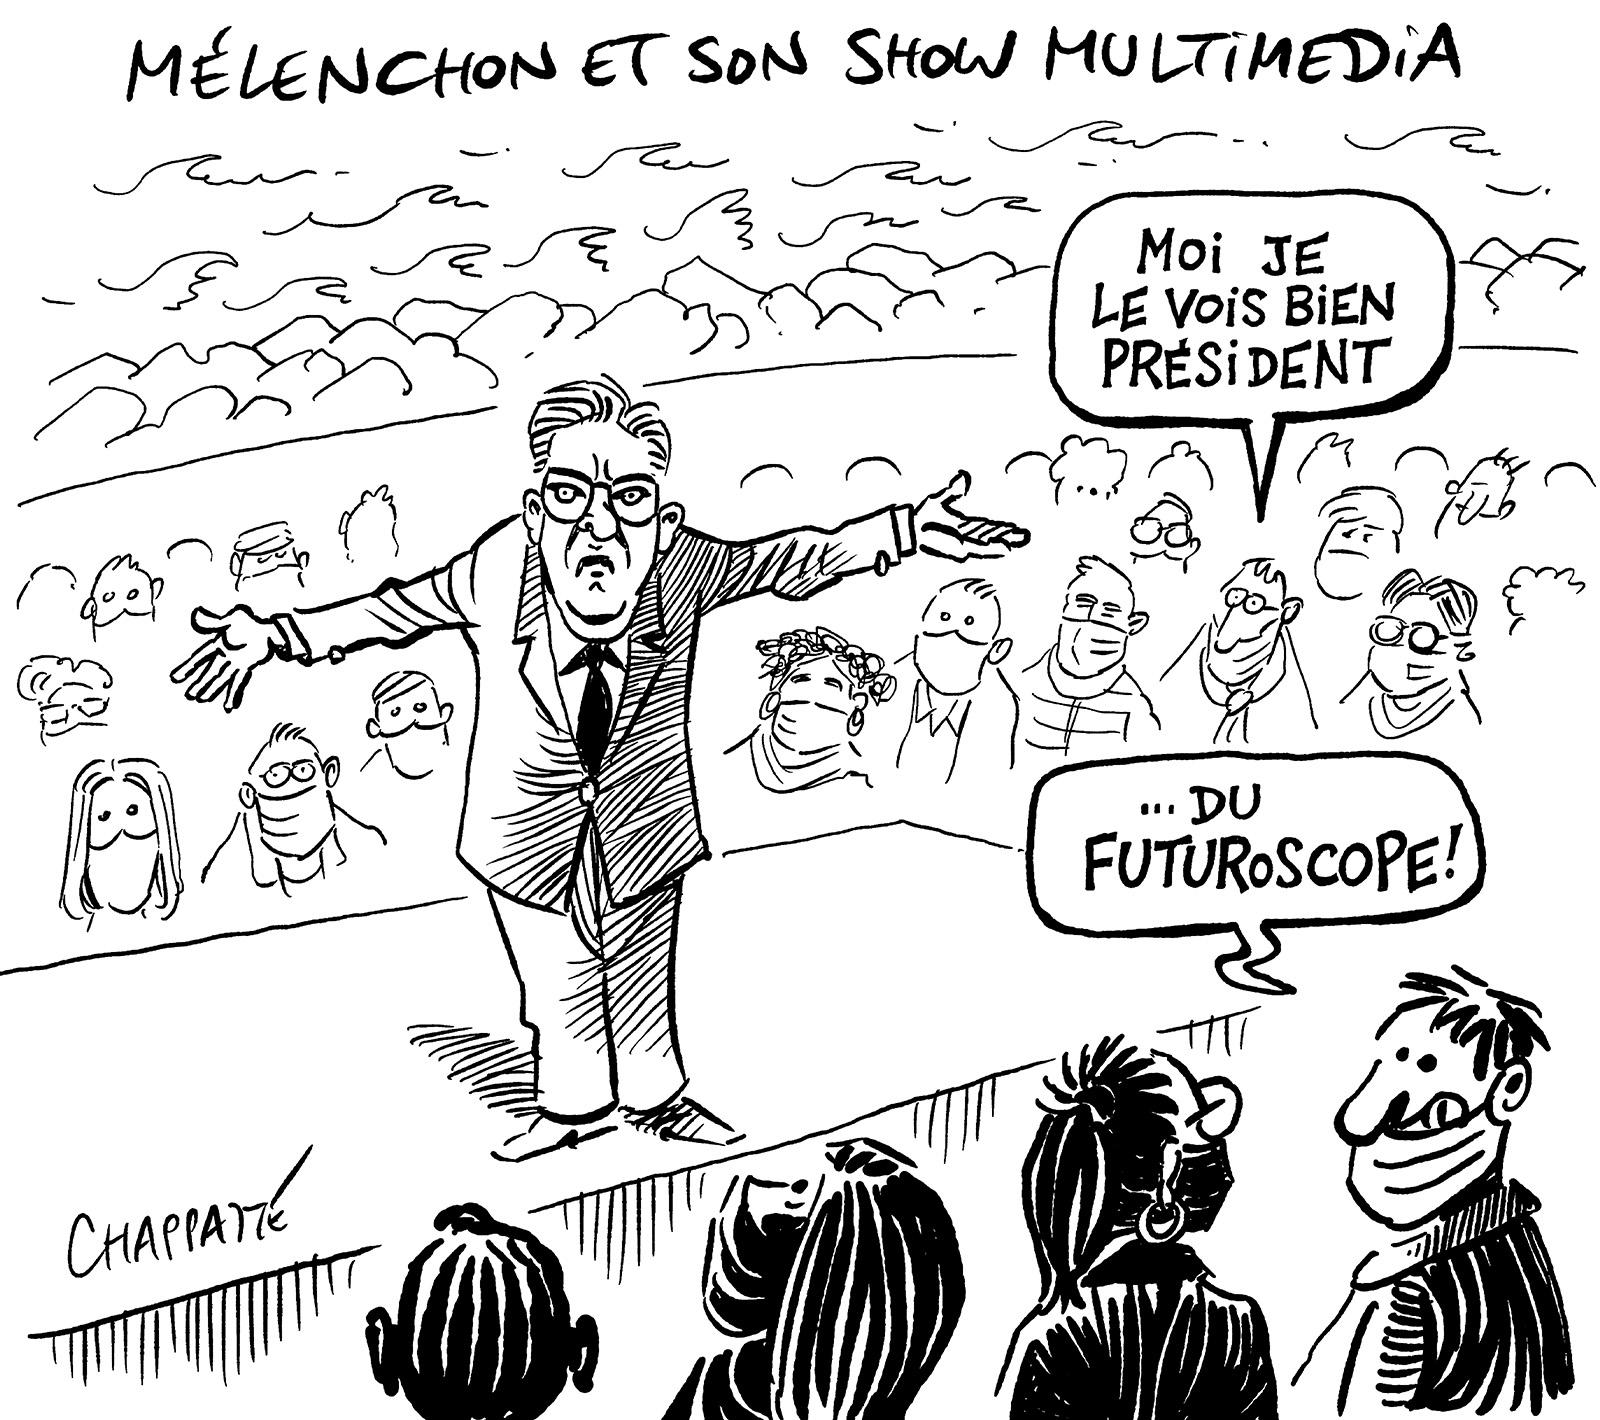 Mélenchon et son show multimédia